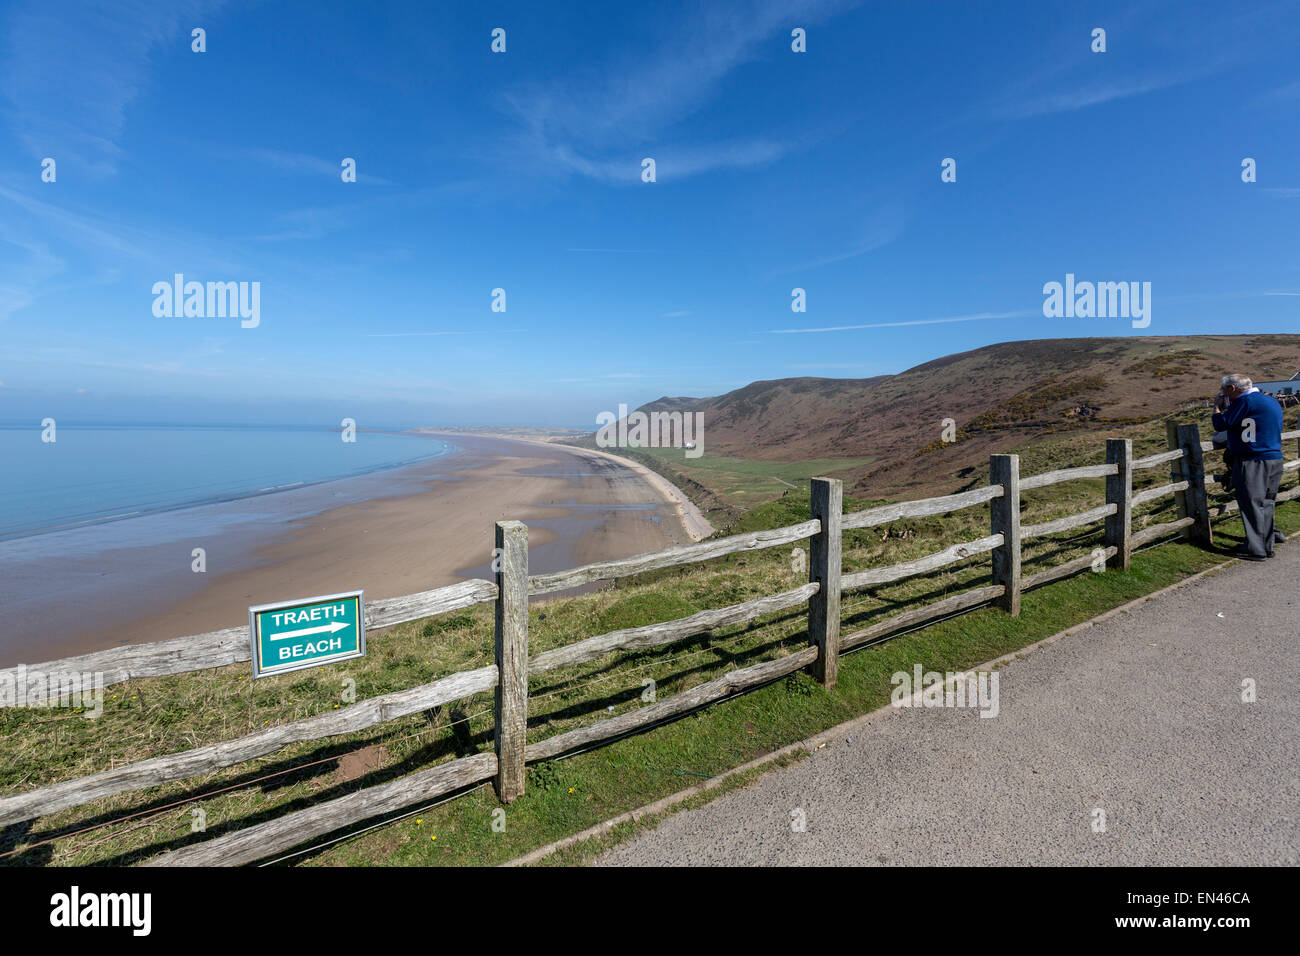 Beach connexion une clôture pour indiquer la manière de Rhossili beach, Swansea, Wales, Royaume-Uni Banque D'Images